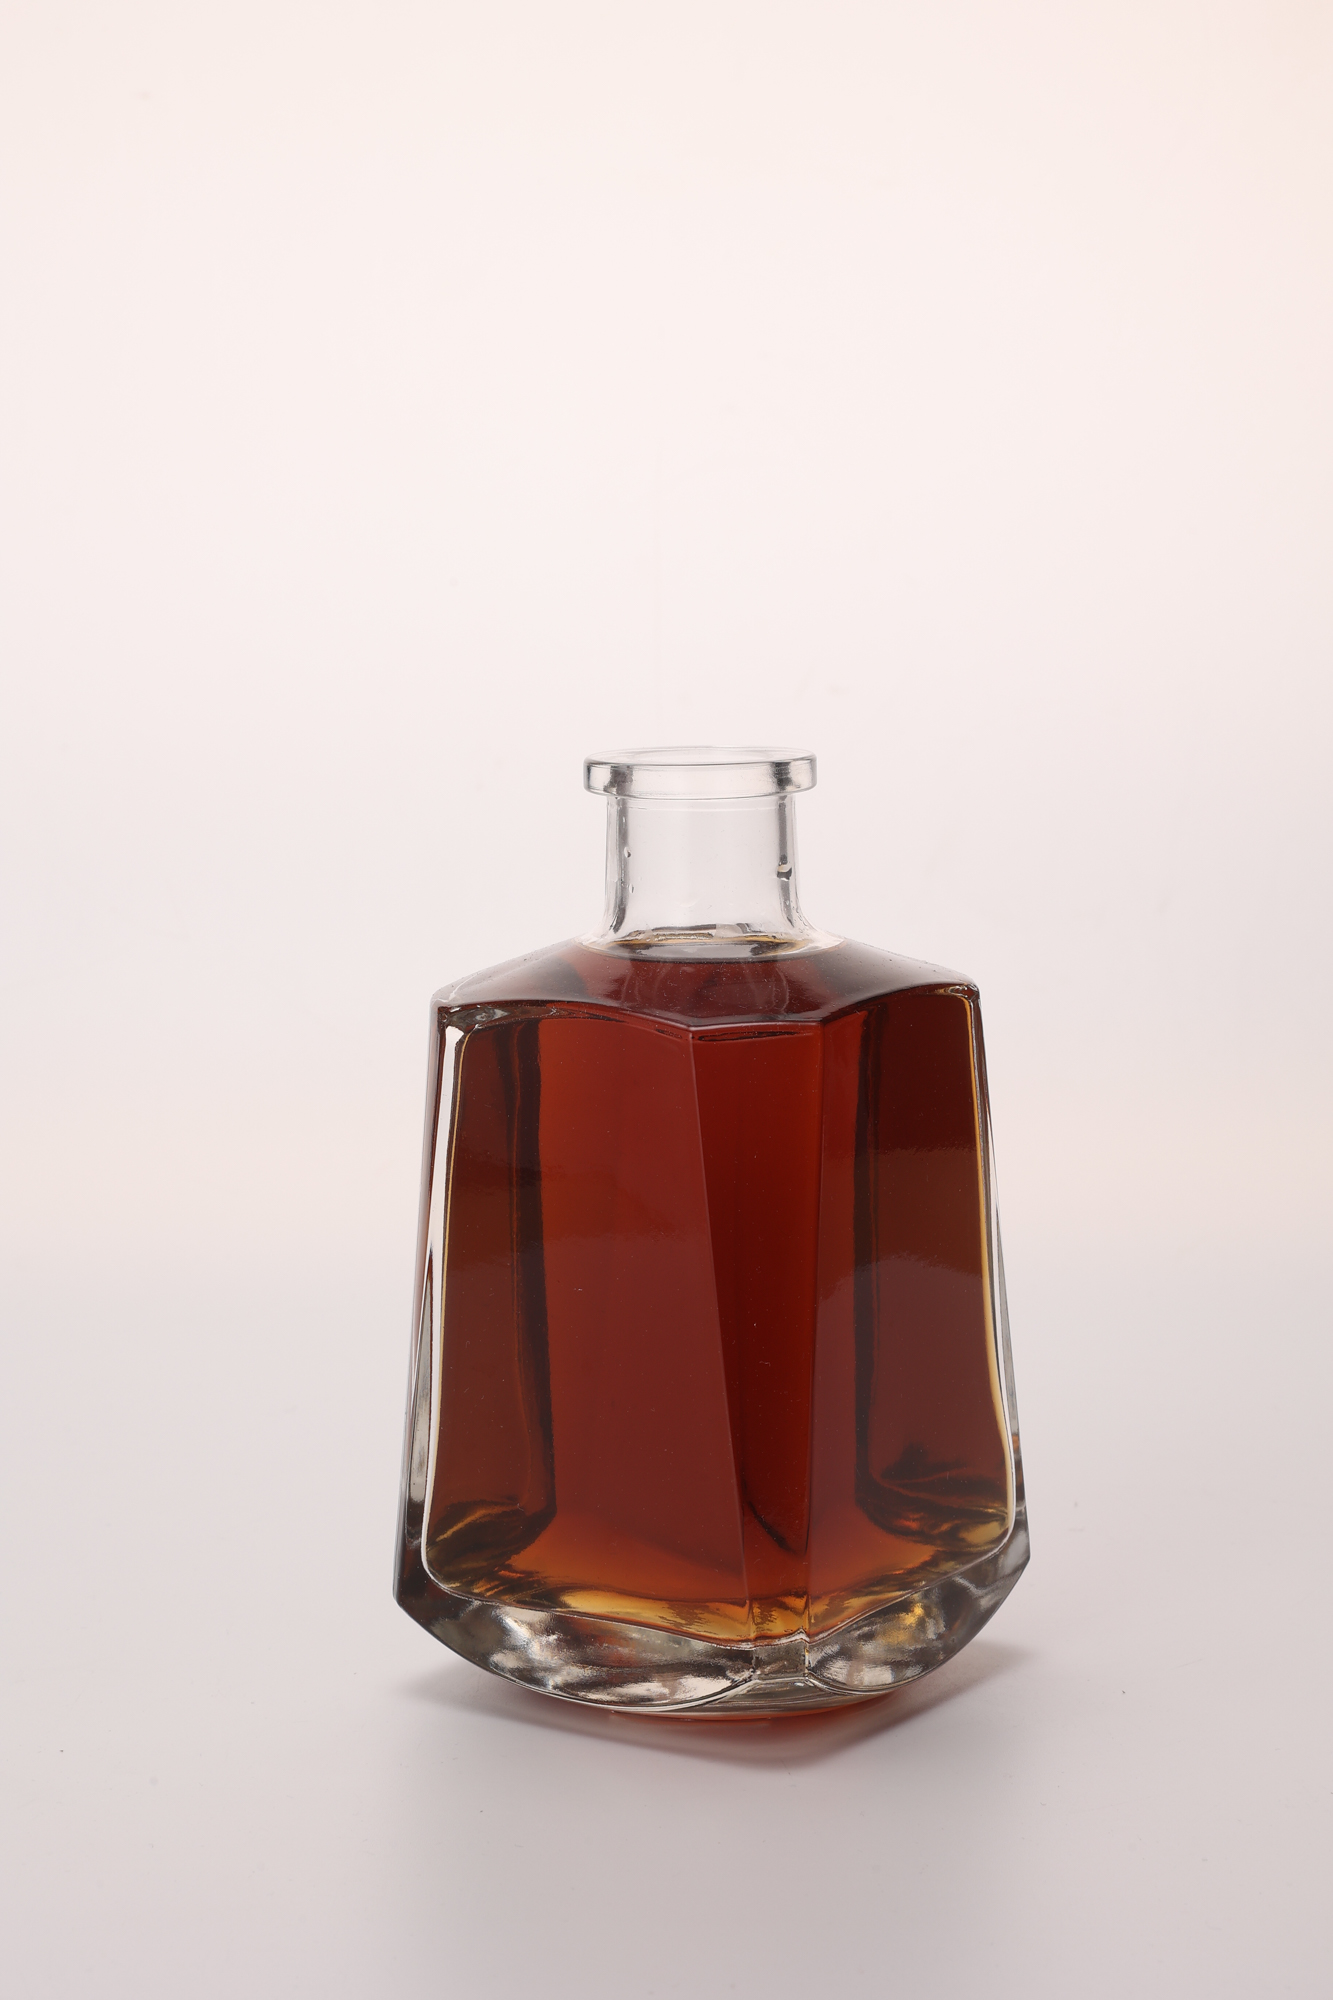 High Grade 750ml Transparent Glass Wine Bottle Liquor Whisky Gin Rum Vodka Brandy Tequila Bottle With Cork Stopper